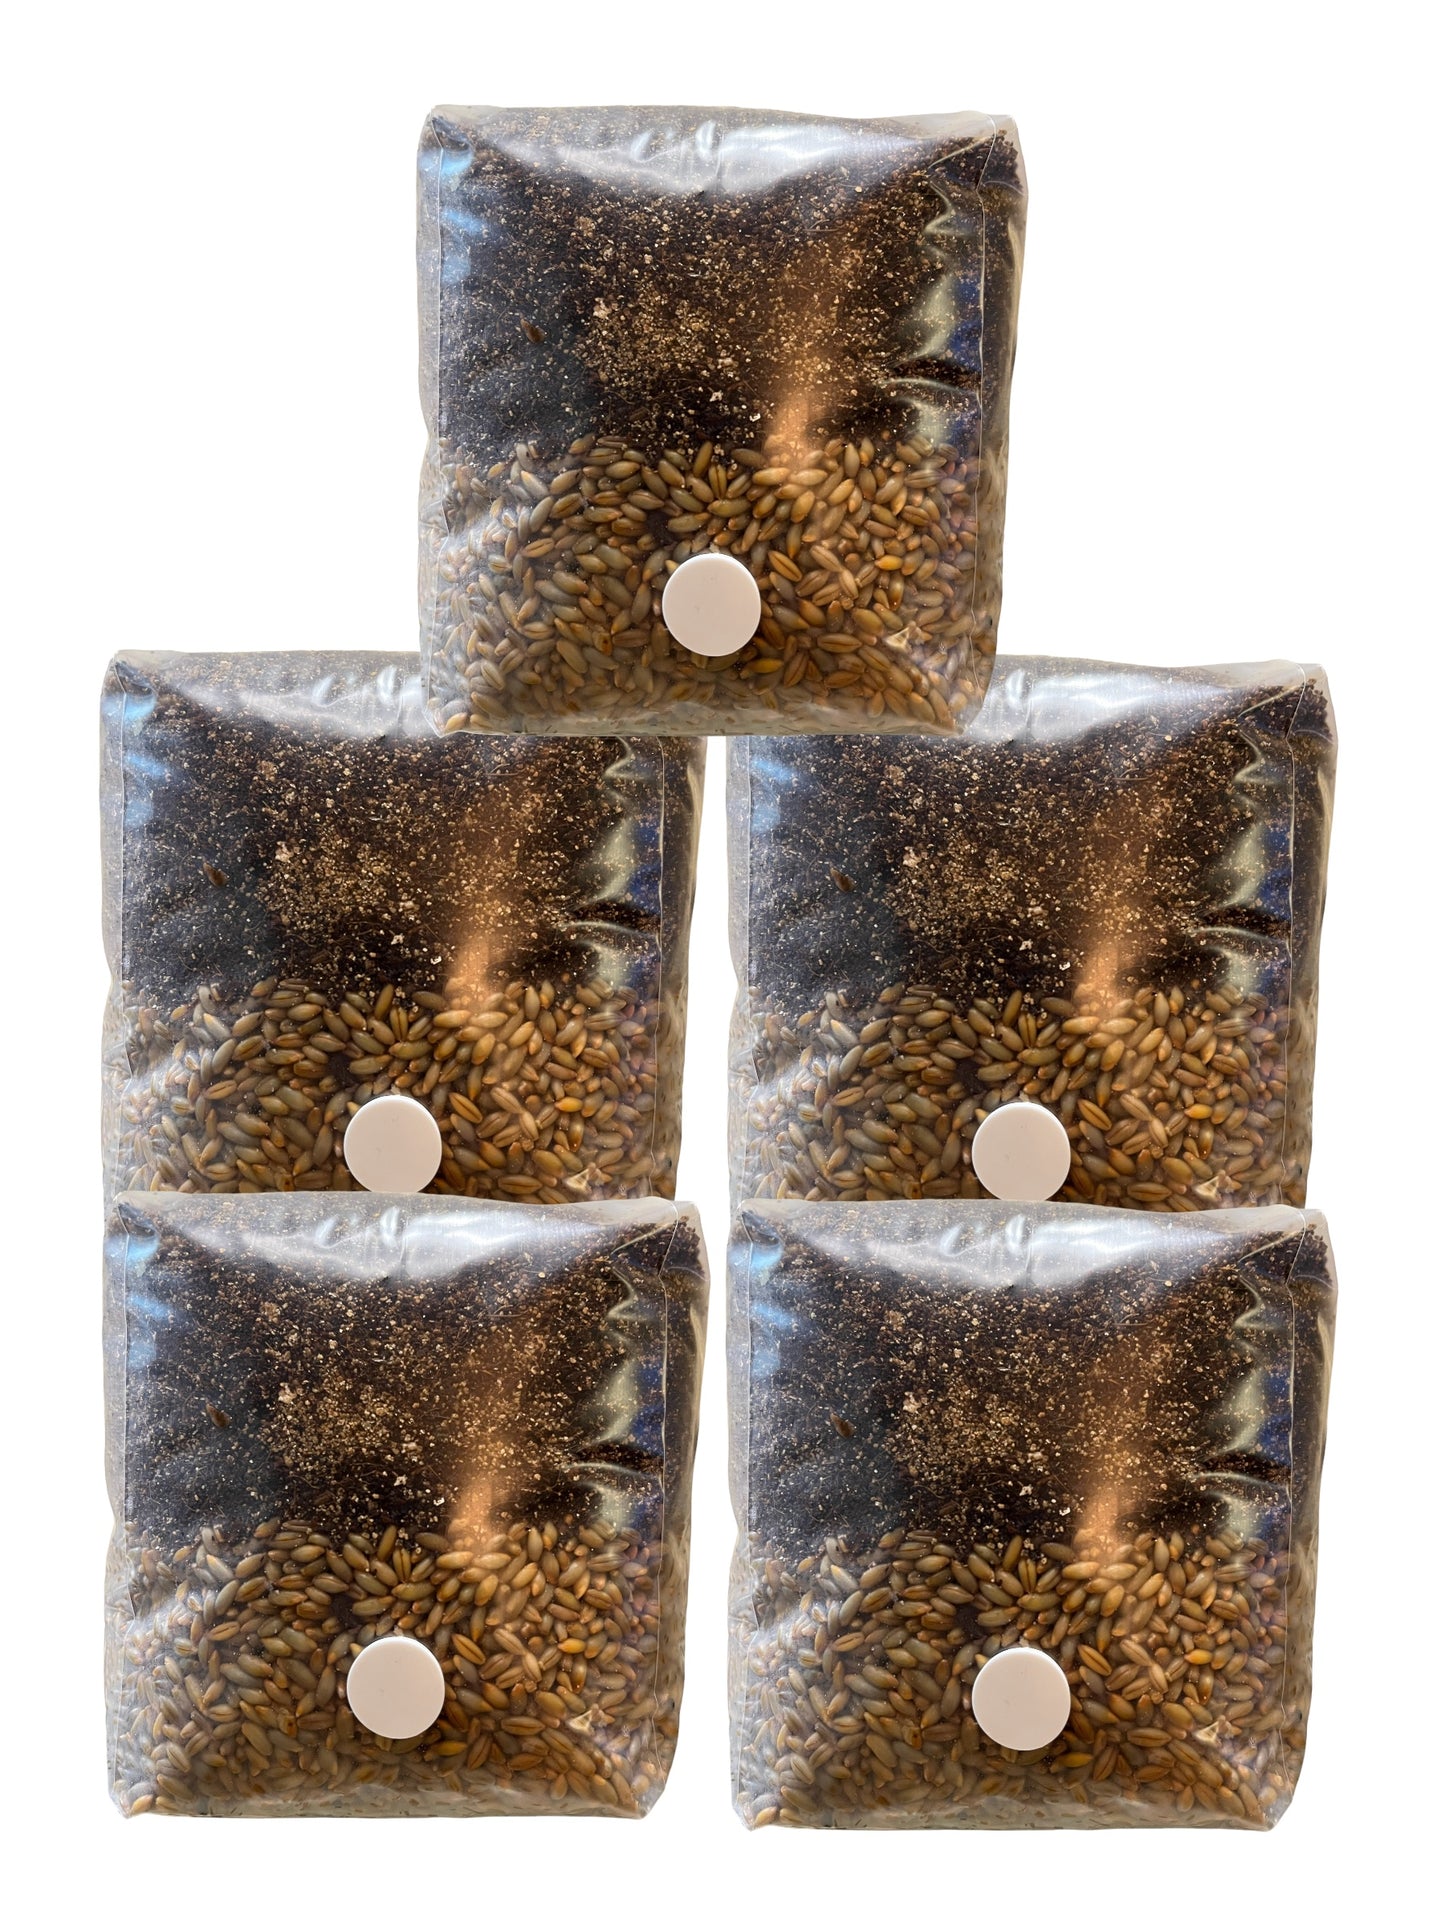 All-in-One MyndSpawn Mushroom Grow Bag (5 Pack)